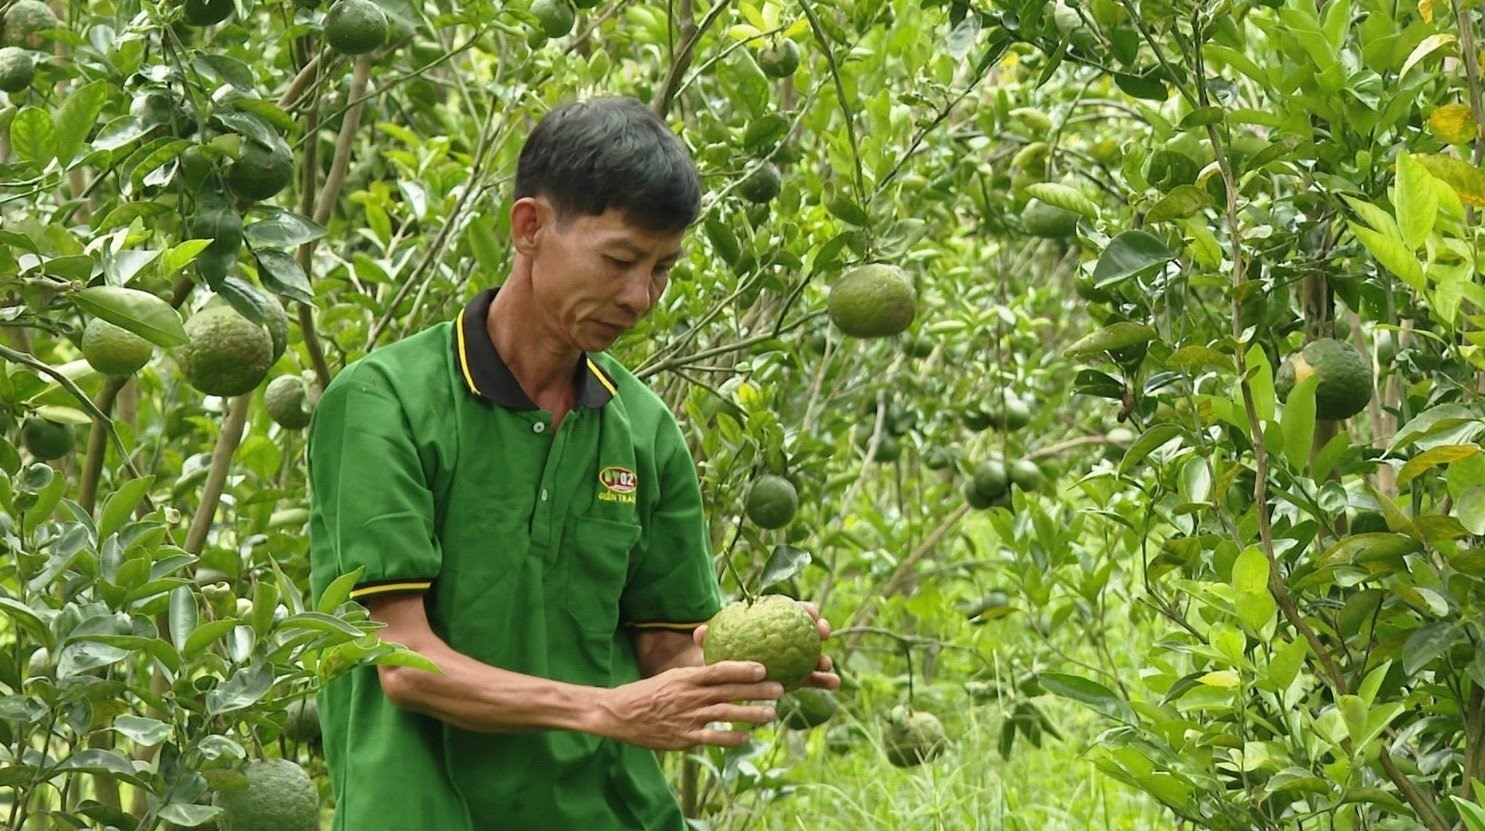 Vườn cam sành của tổ hợp tác cây ăn trái Tân Xuân cho những trái ngon – an toàn nhất Hội thi Trái ngon – an toàn Nam Bộ 2023. Ảnh: Phương Anh